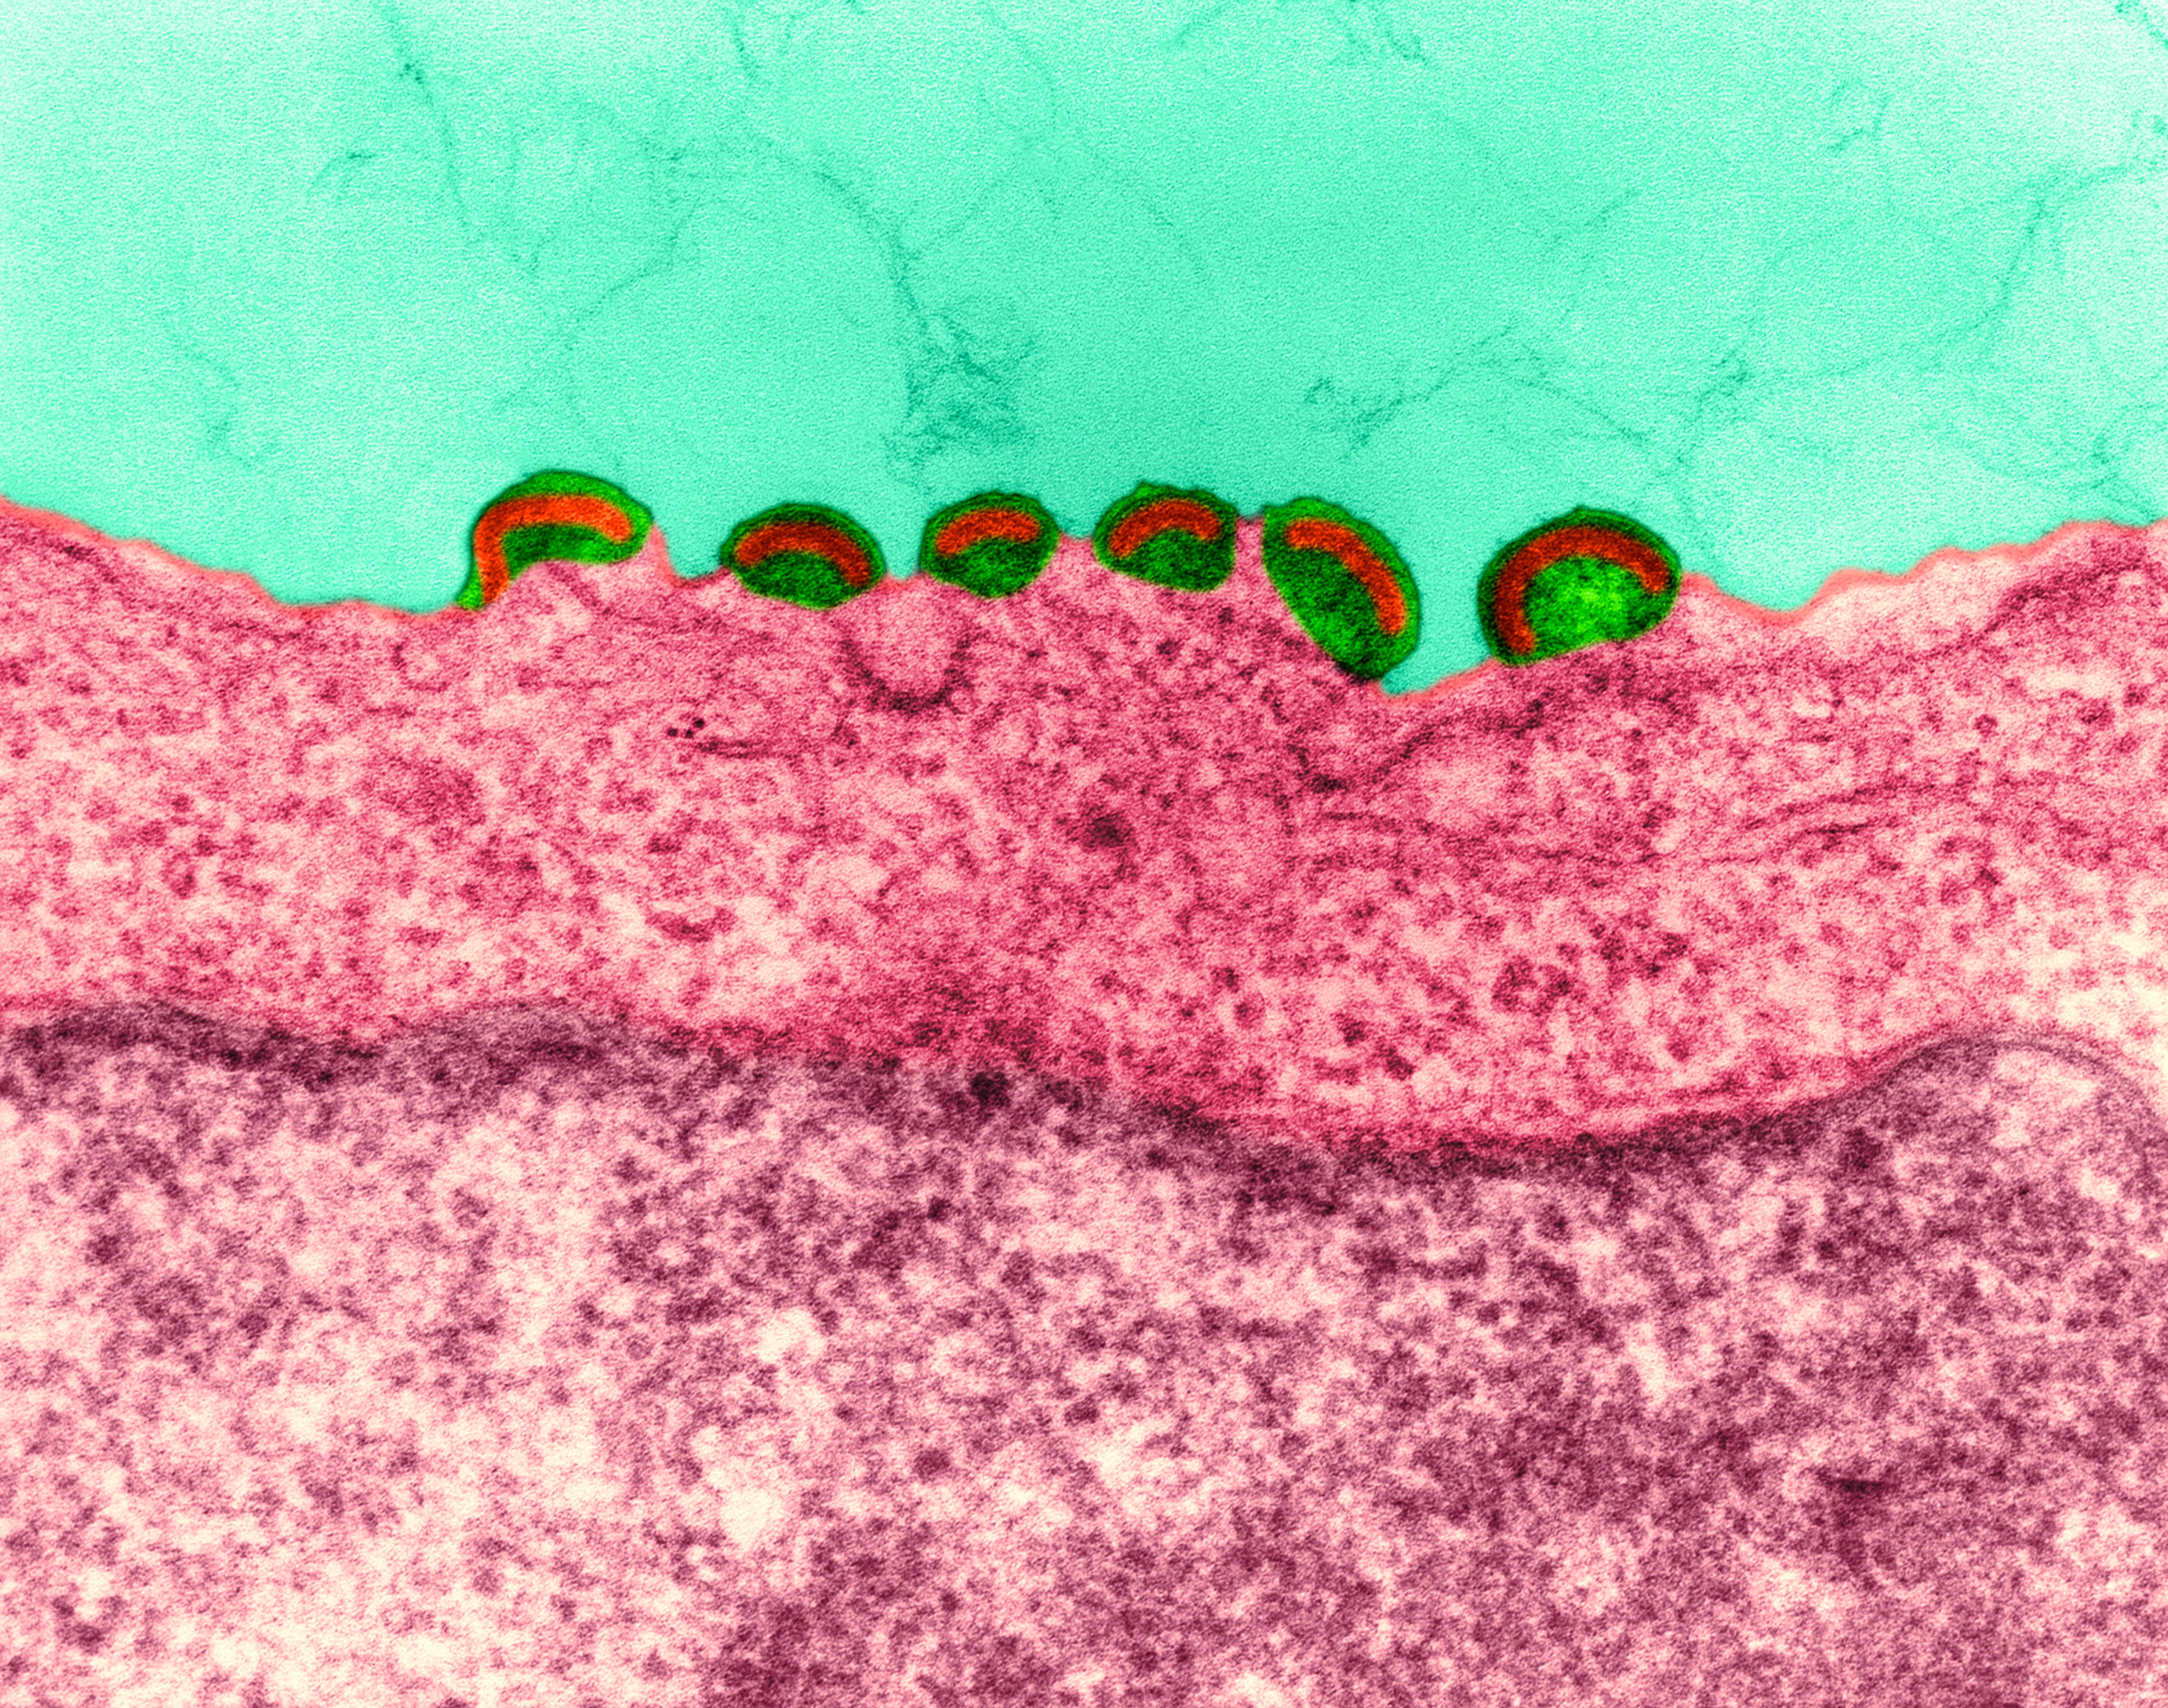 Ősi vírusok hulladéka védi az embriókat a retrovírusos fertőzésektől